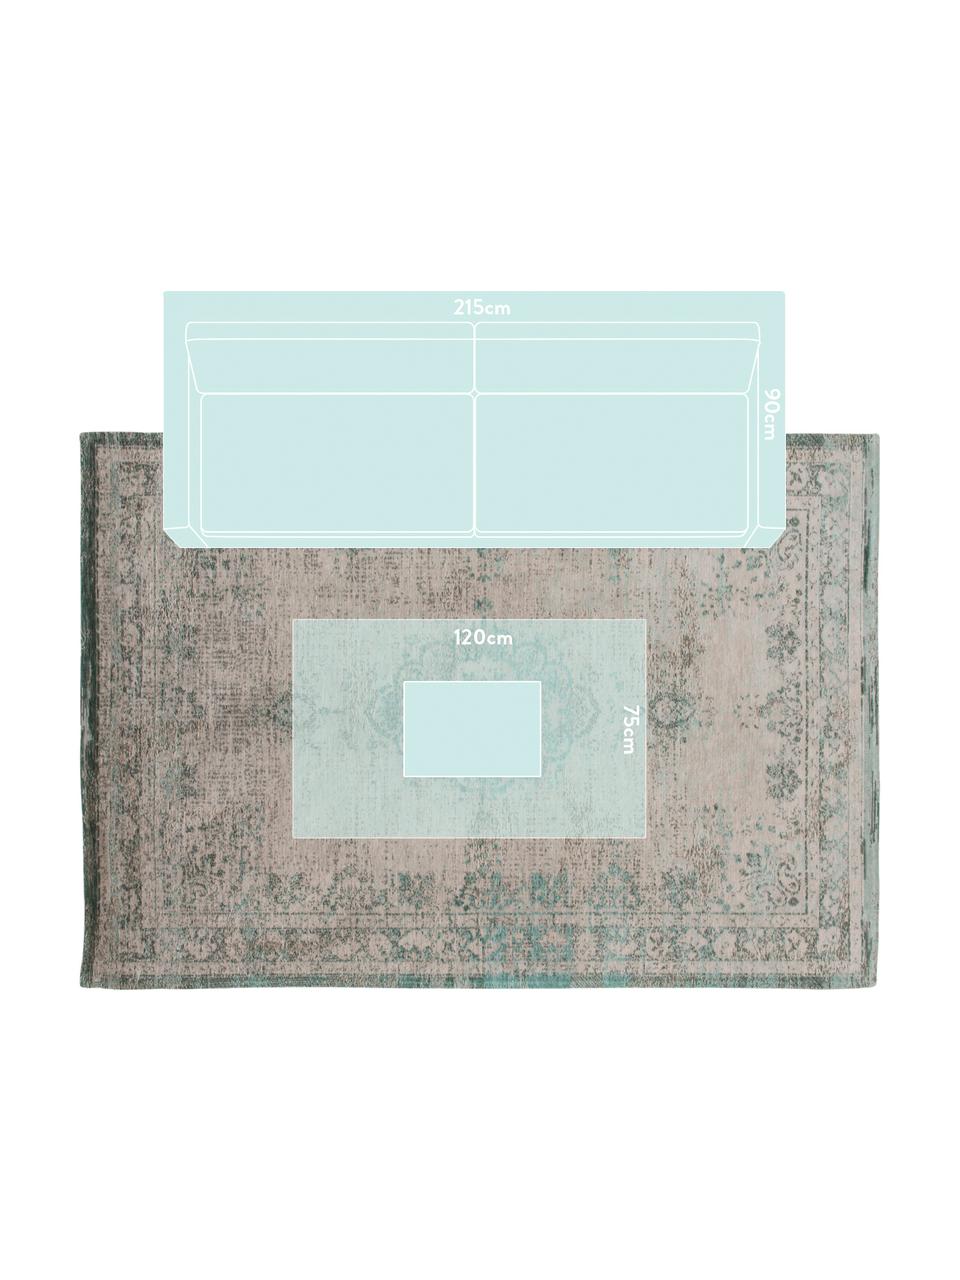 Tappeto vintage in ciniglia Medaillon, Tessuto: Jacquard, Retro: Filato di ciniglia, rives, Verde, rosa, Larg. 140 x Lung. 200 cm (taglia S)